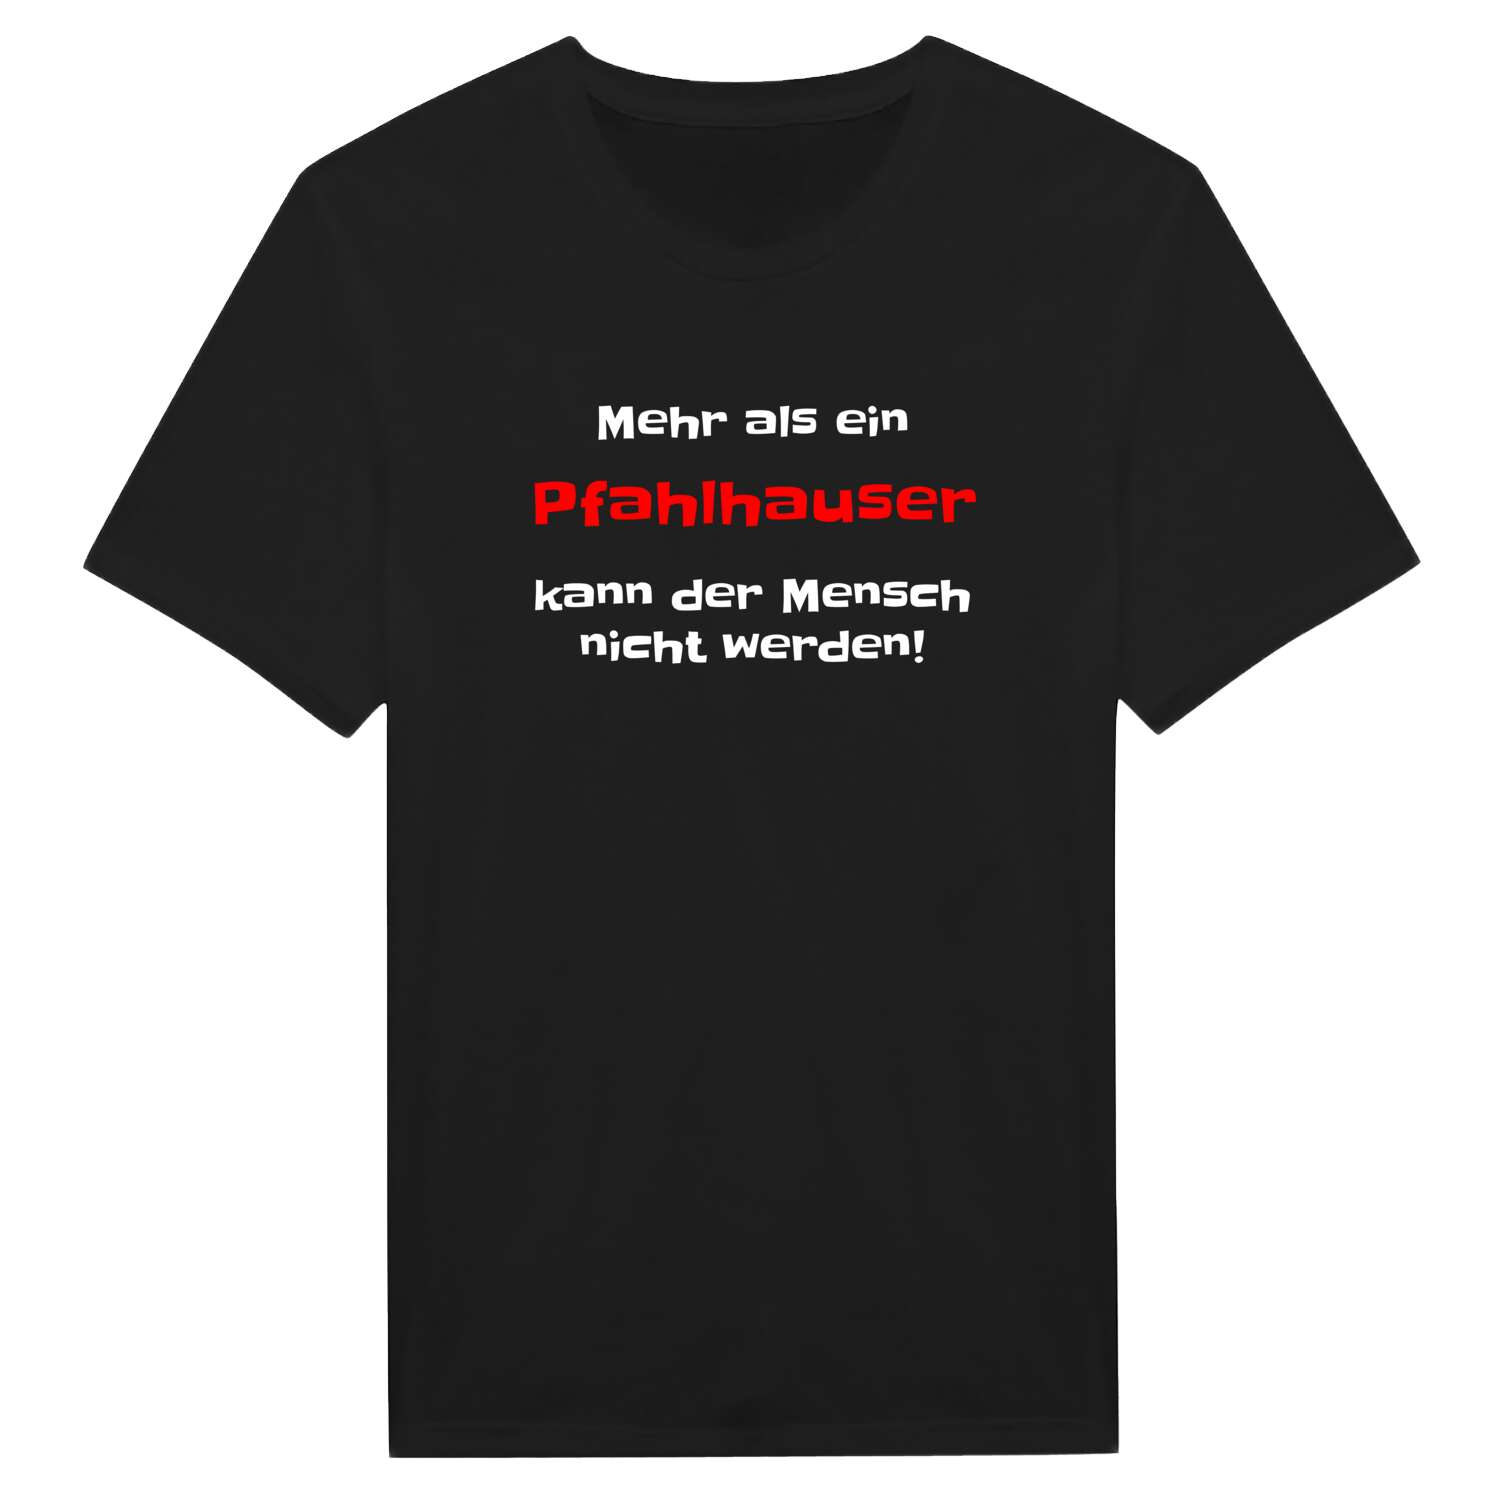 Pfahlhaus T-Shirt »Mehr als ein«